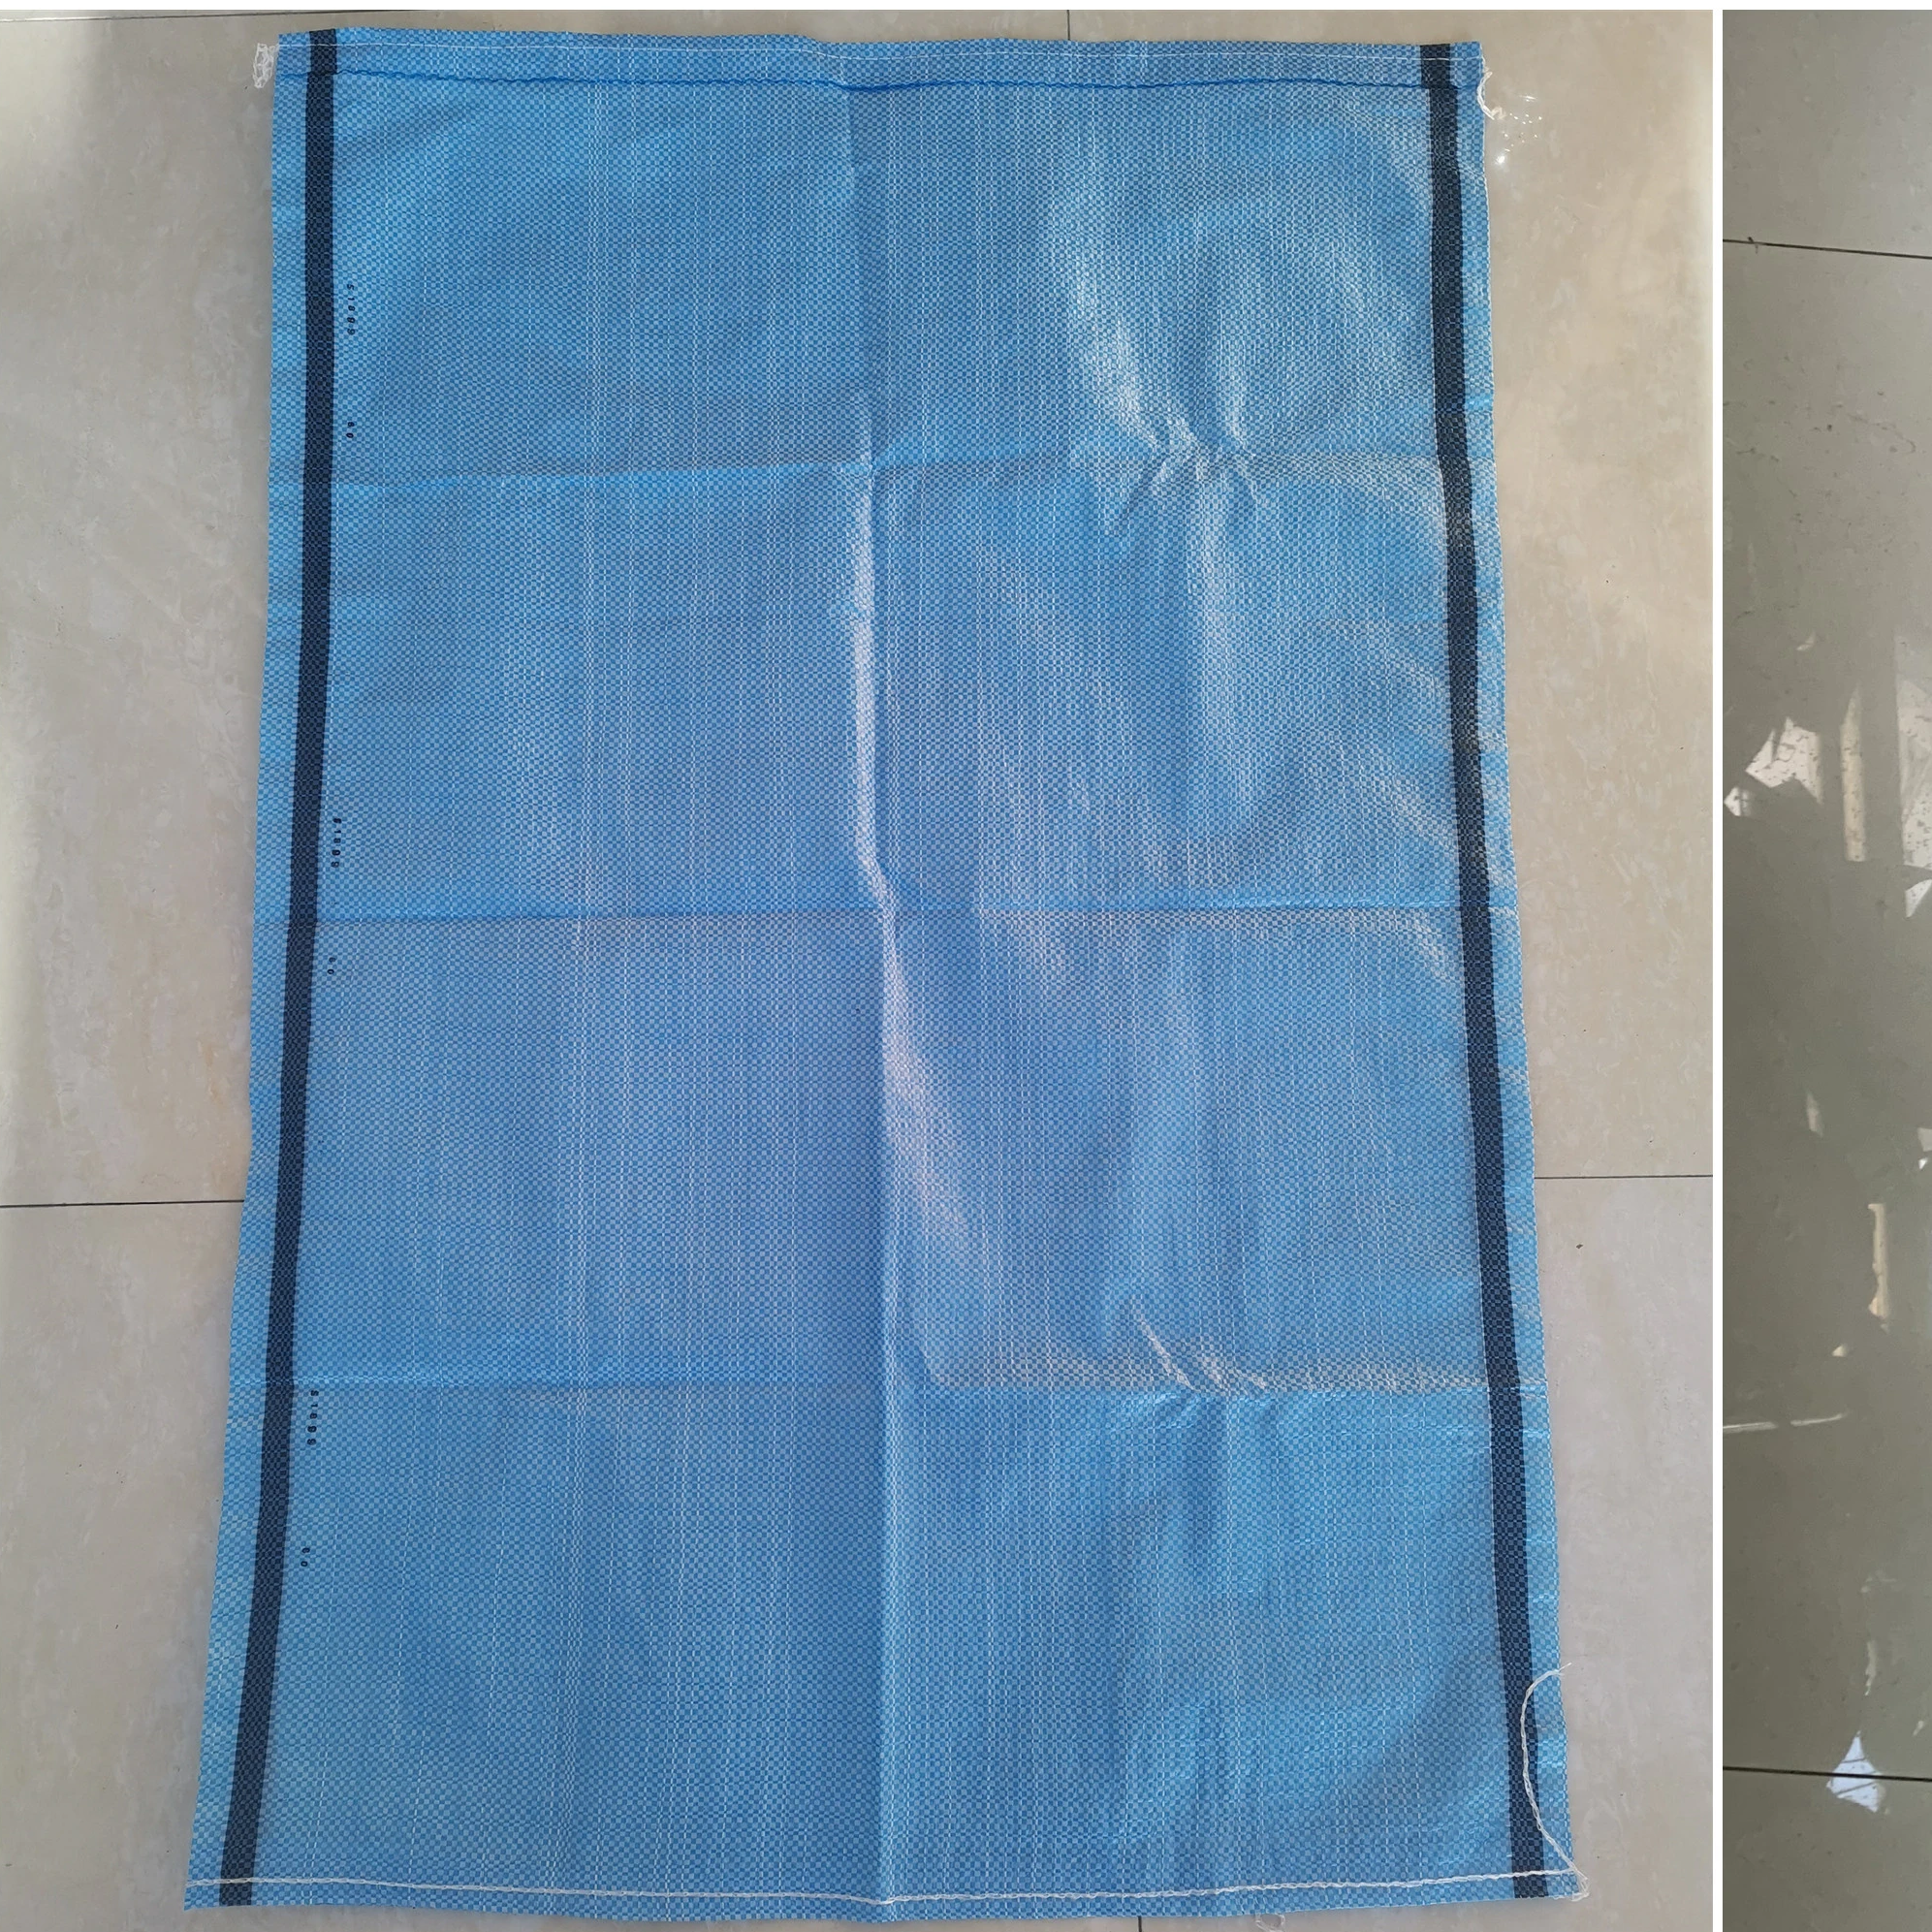 Packaging 25 Kg Whole Rice Sac De Riz 50kh Rafia Polypropylene Woven Plastic Bag for Fertilizer / Seeds / Snack / Feeds / Sugar